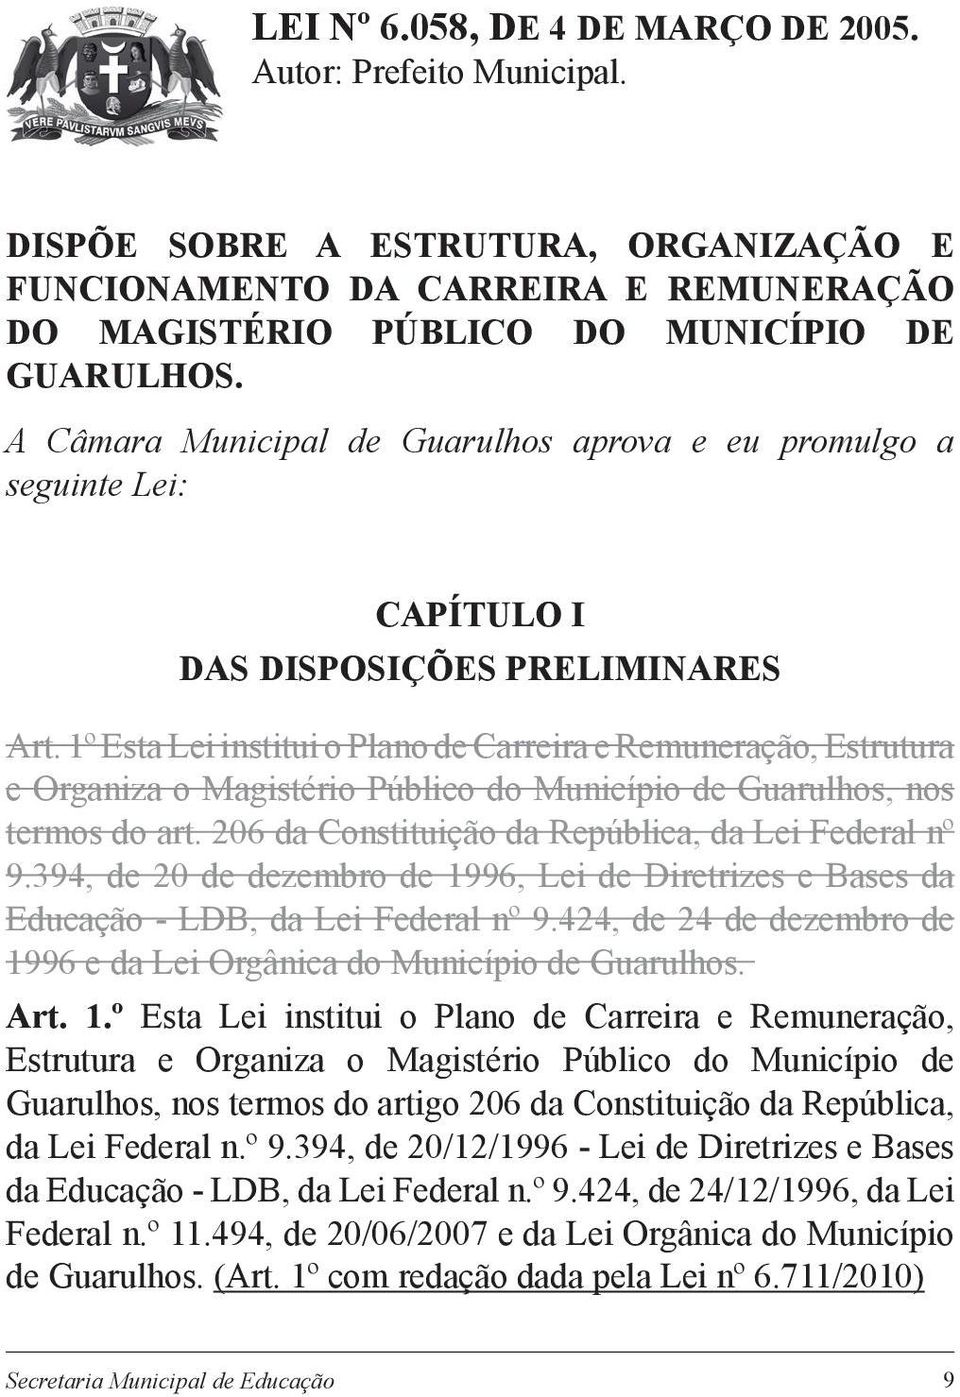 1º Esta Lei institui o Plano de Carreira e Remuneração, Estrutura e Organiza o Magistério Público do Município de Guarulhos, nos termos do art. 206 da Constituição da República, da Lei Federal nº 9.